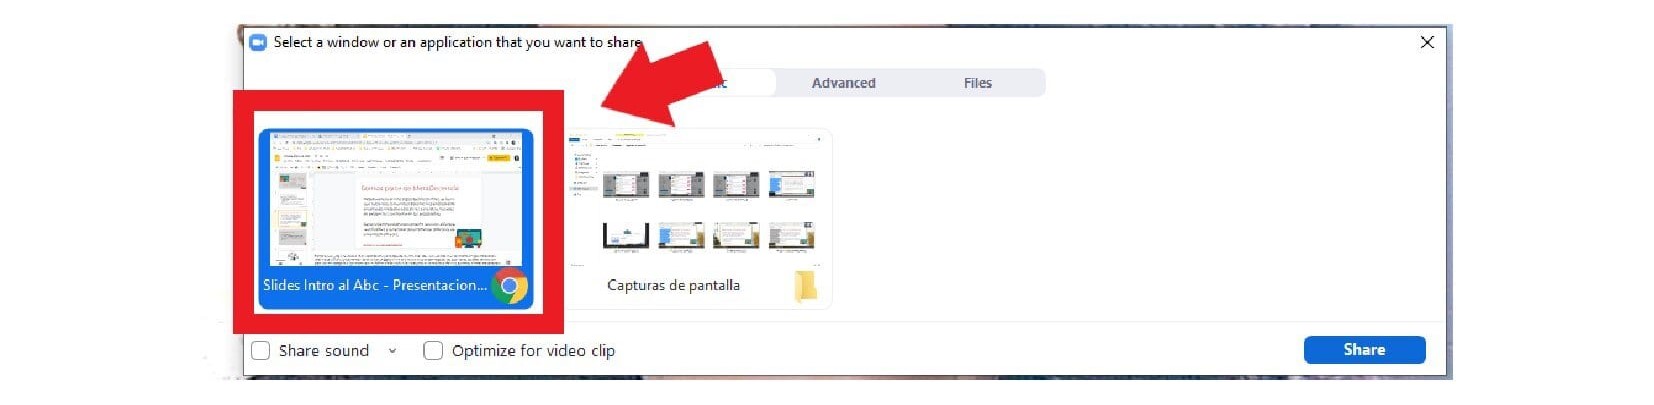 Captura de pantalla de las distintas ventanas utilizadas para compartir contenido a través de una videollamada”